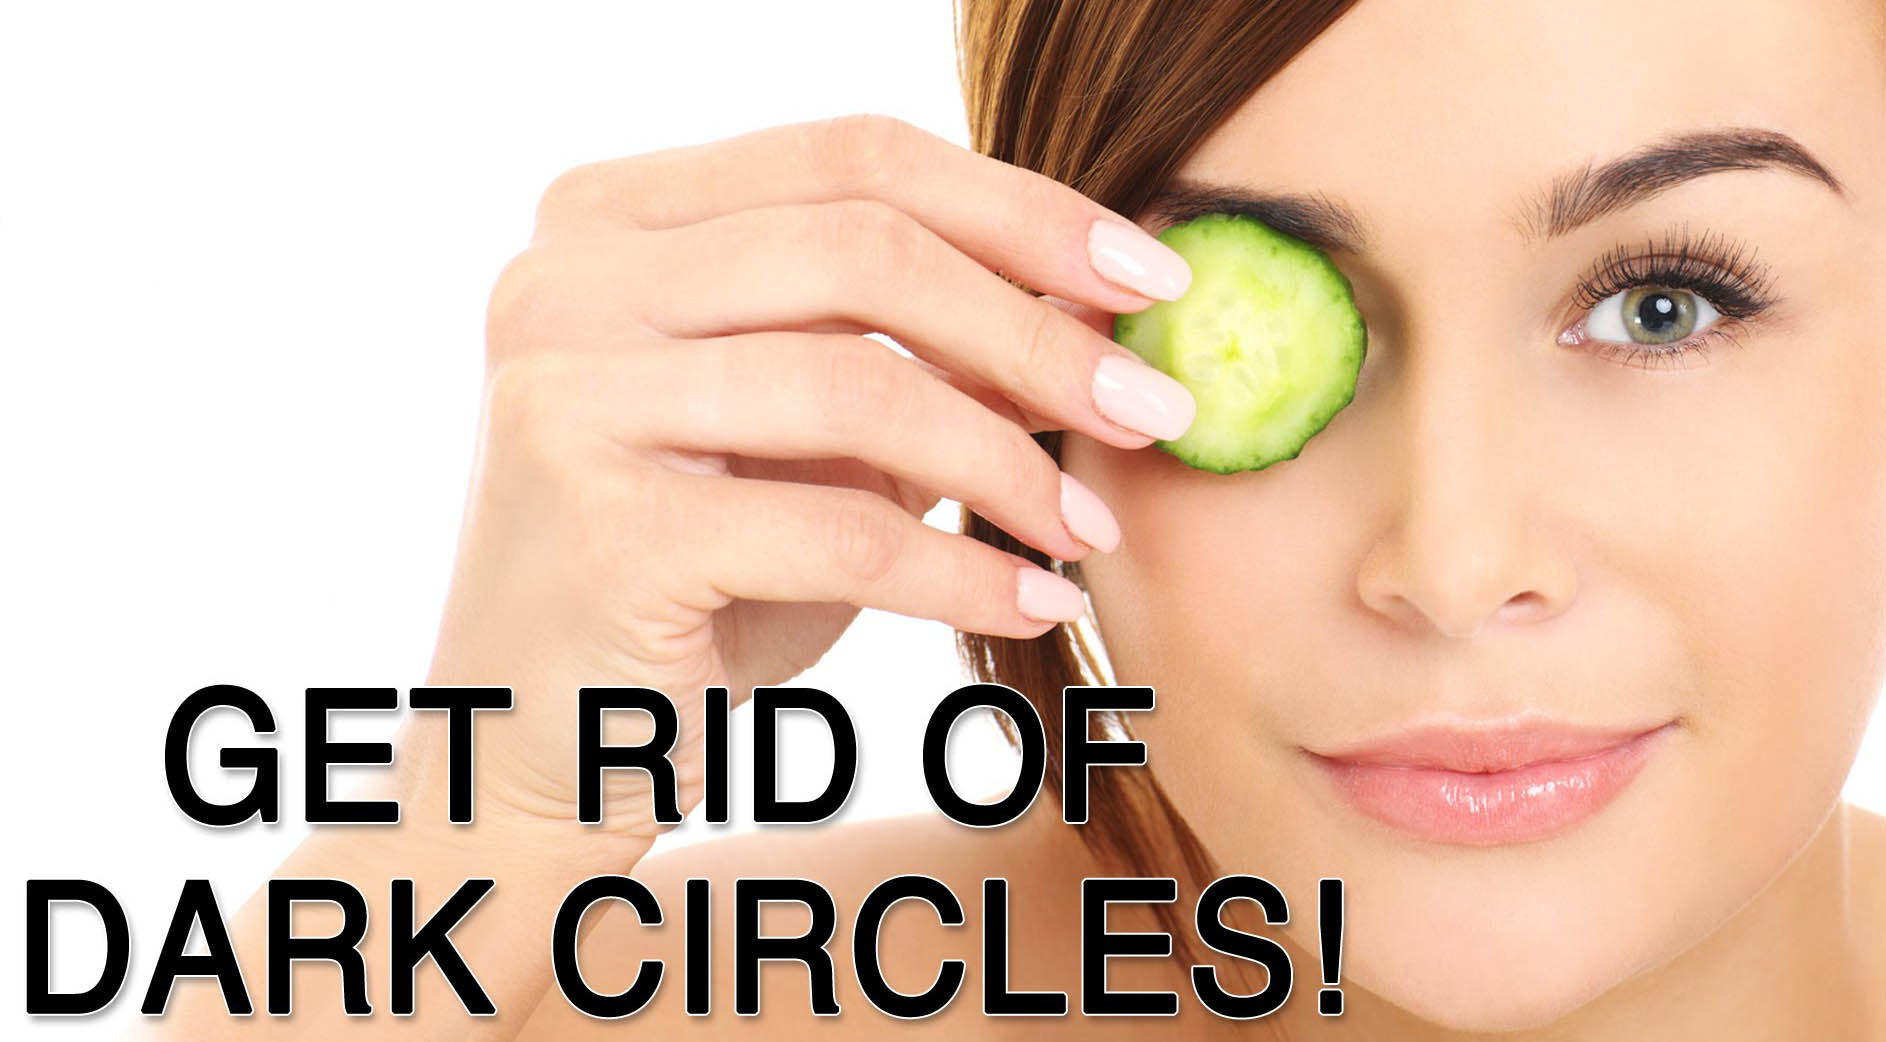 10 Ways To Get Rid Of Dark Circles